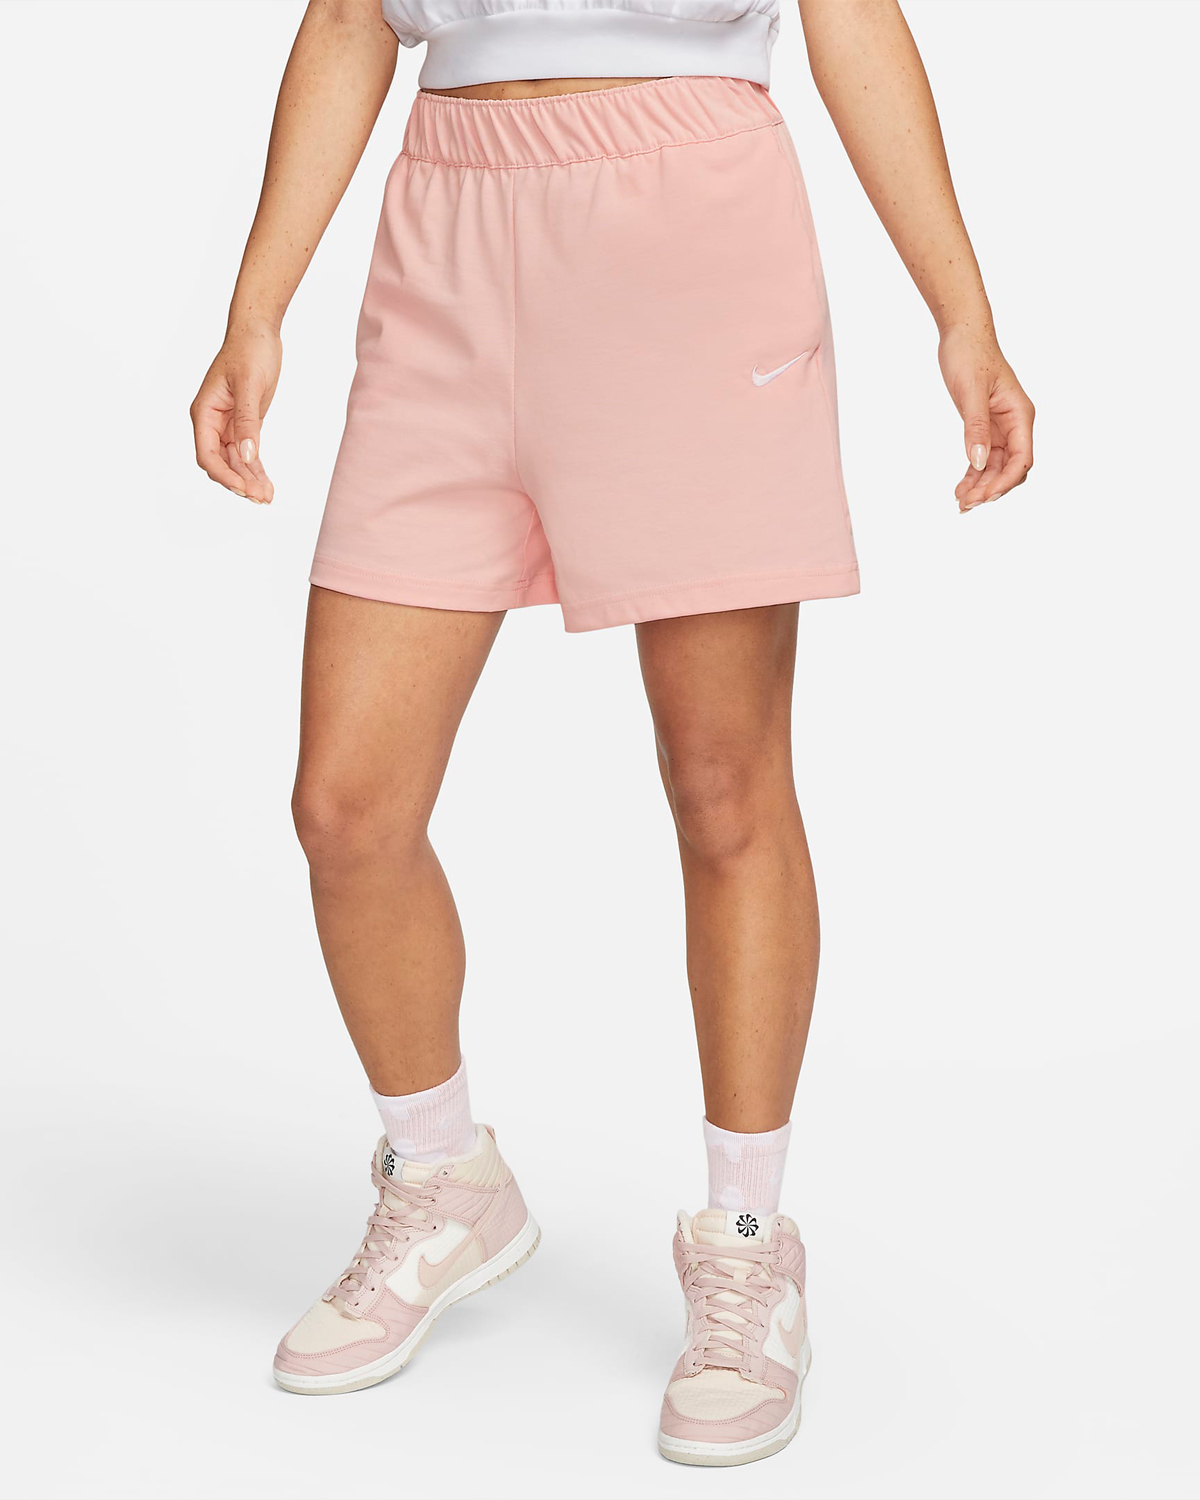 Nike-Sportswear-Womens-Jersey-Shorts-Atmosphere-Pink